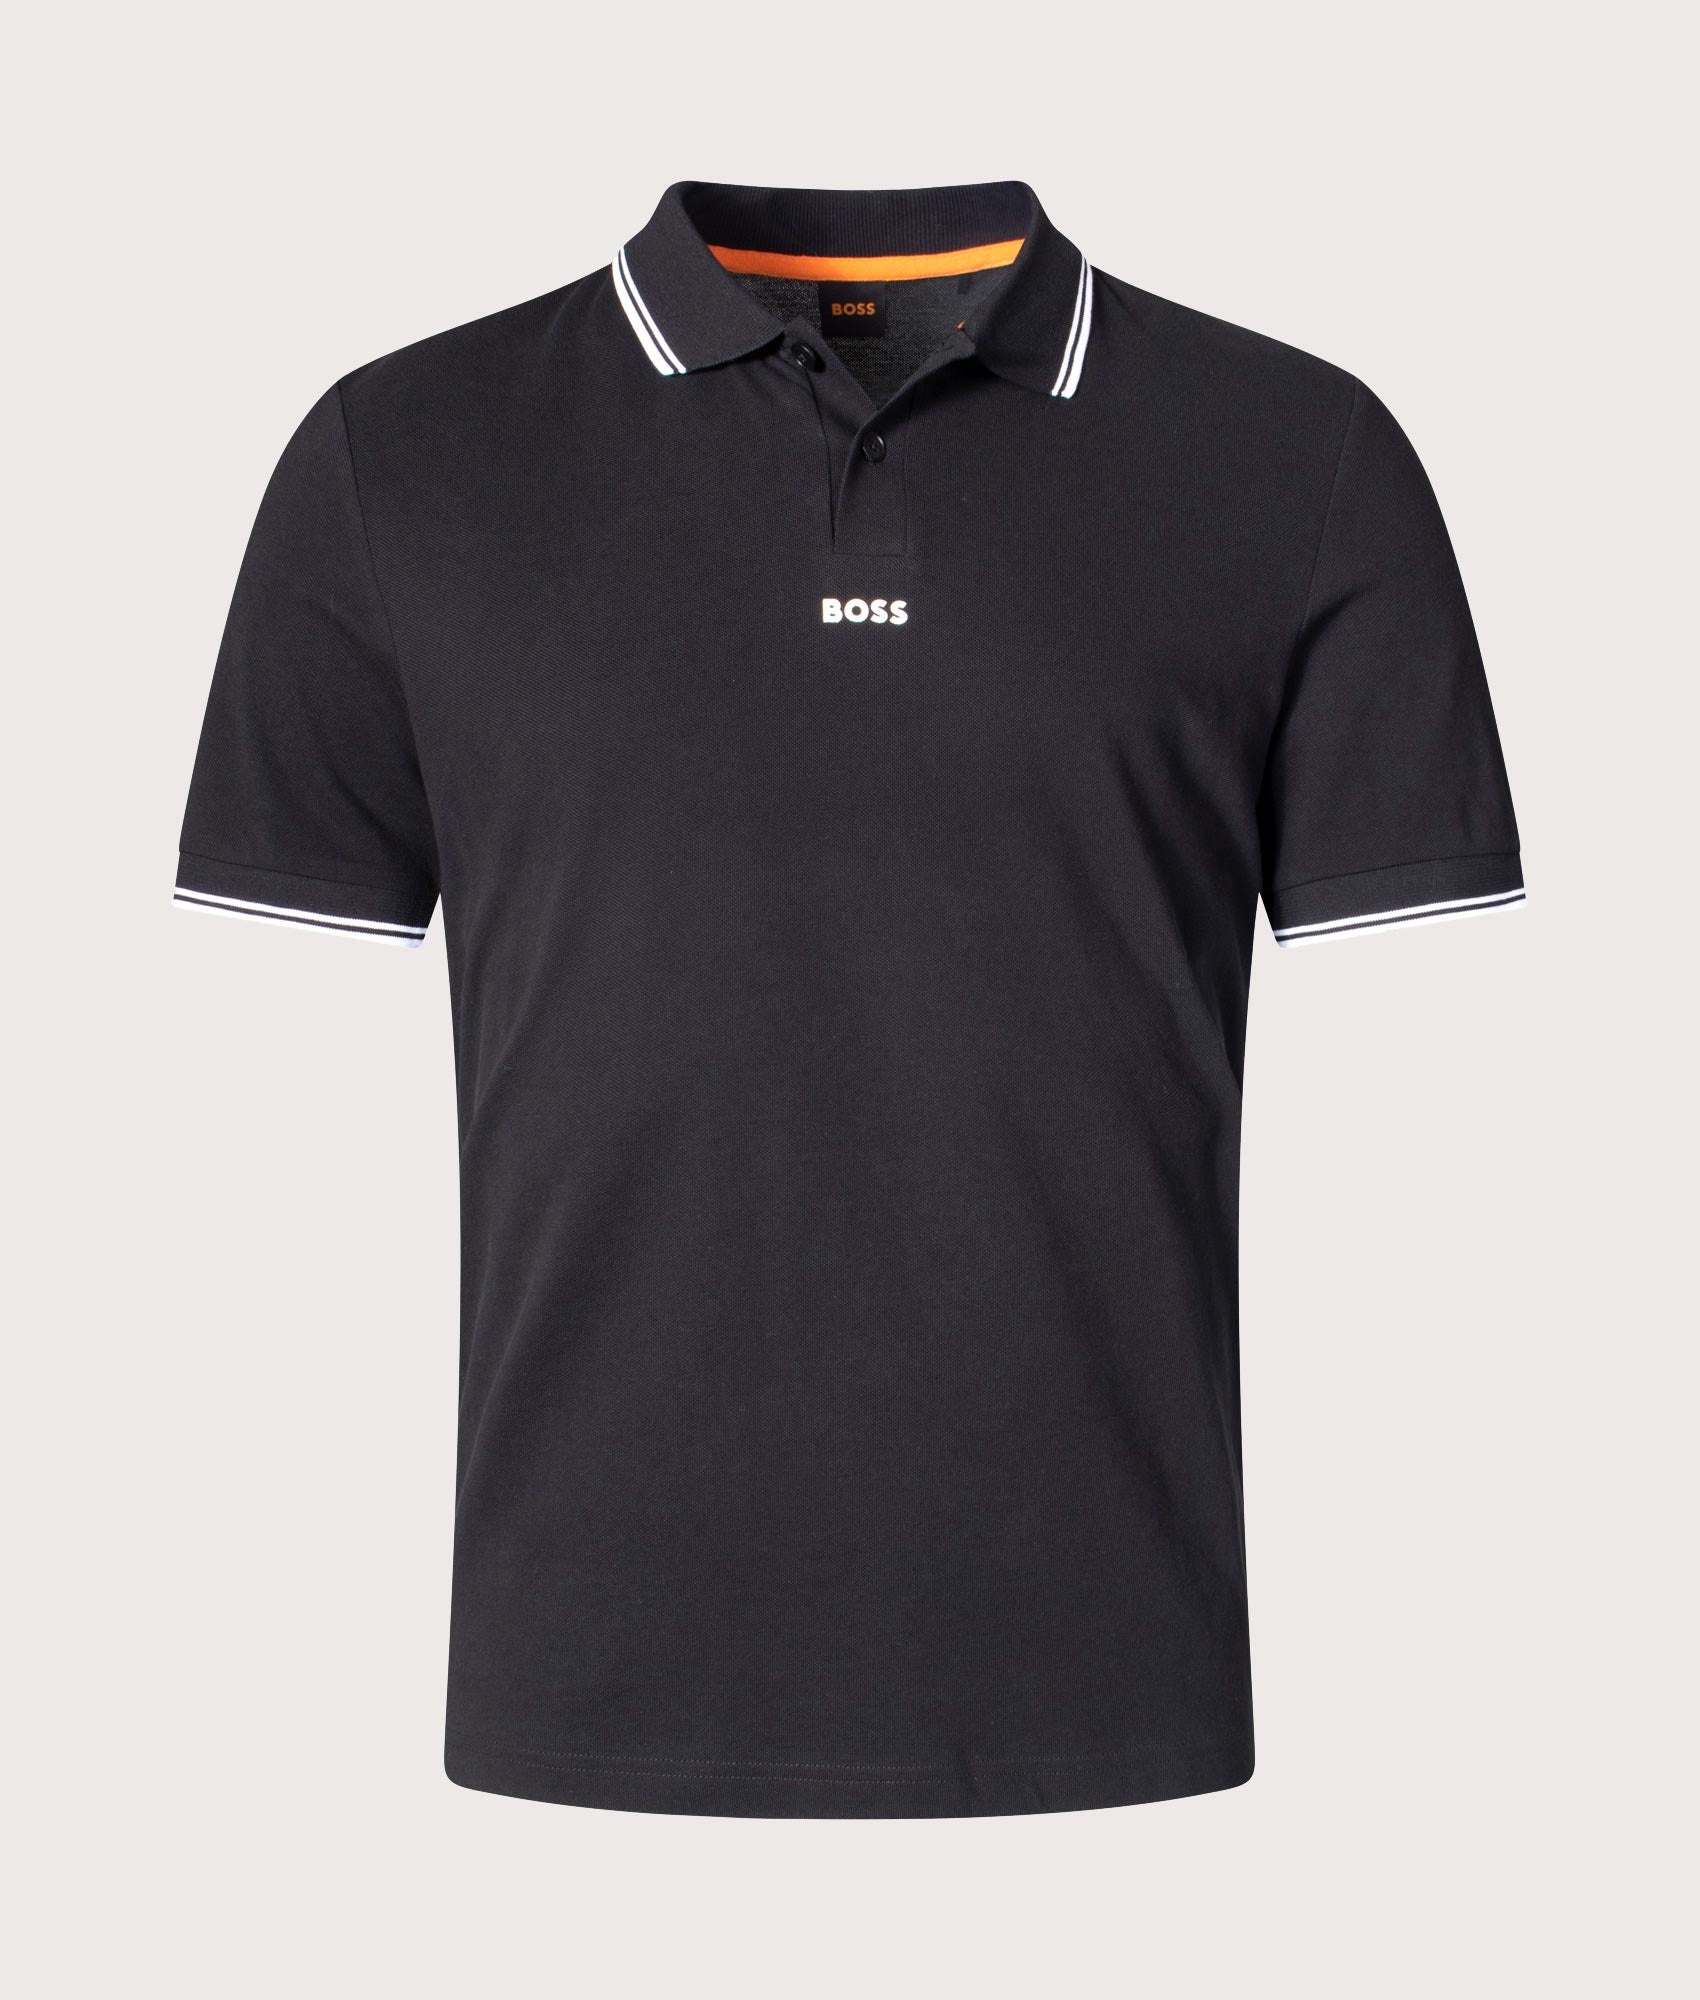 BOSS Mens Pchup Polo Shirt - Colour: 001 Black - Size: Large